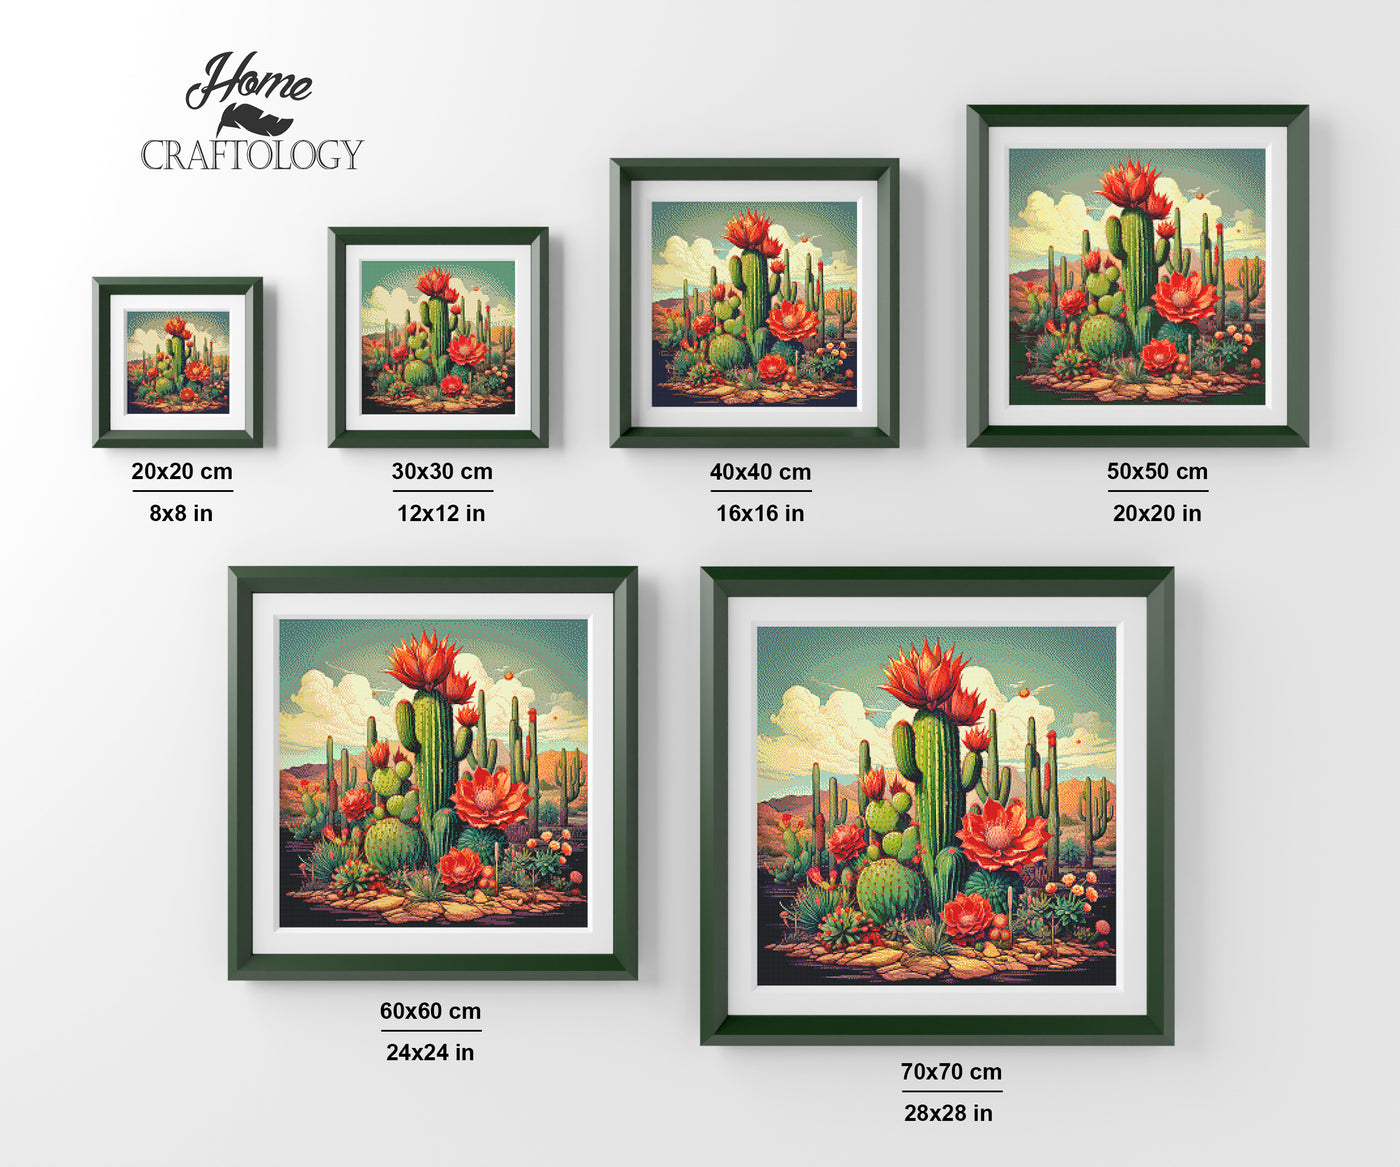 New! Cactus with Flowers - Premium Diamond Painting Kit